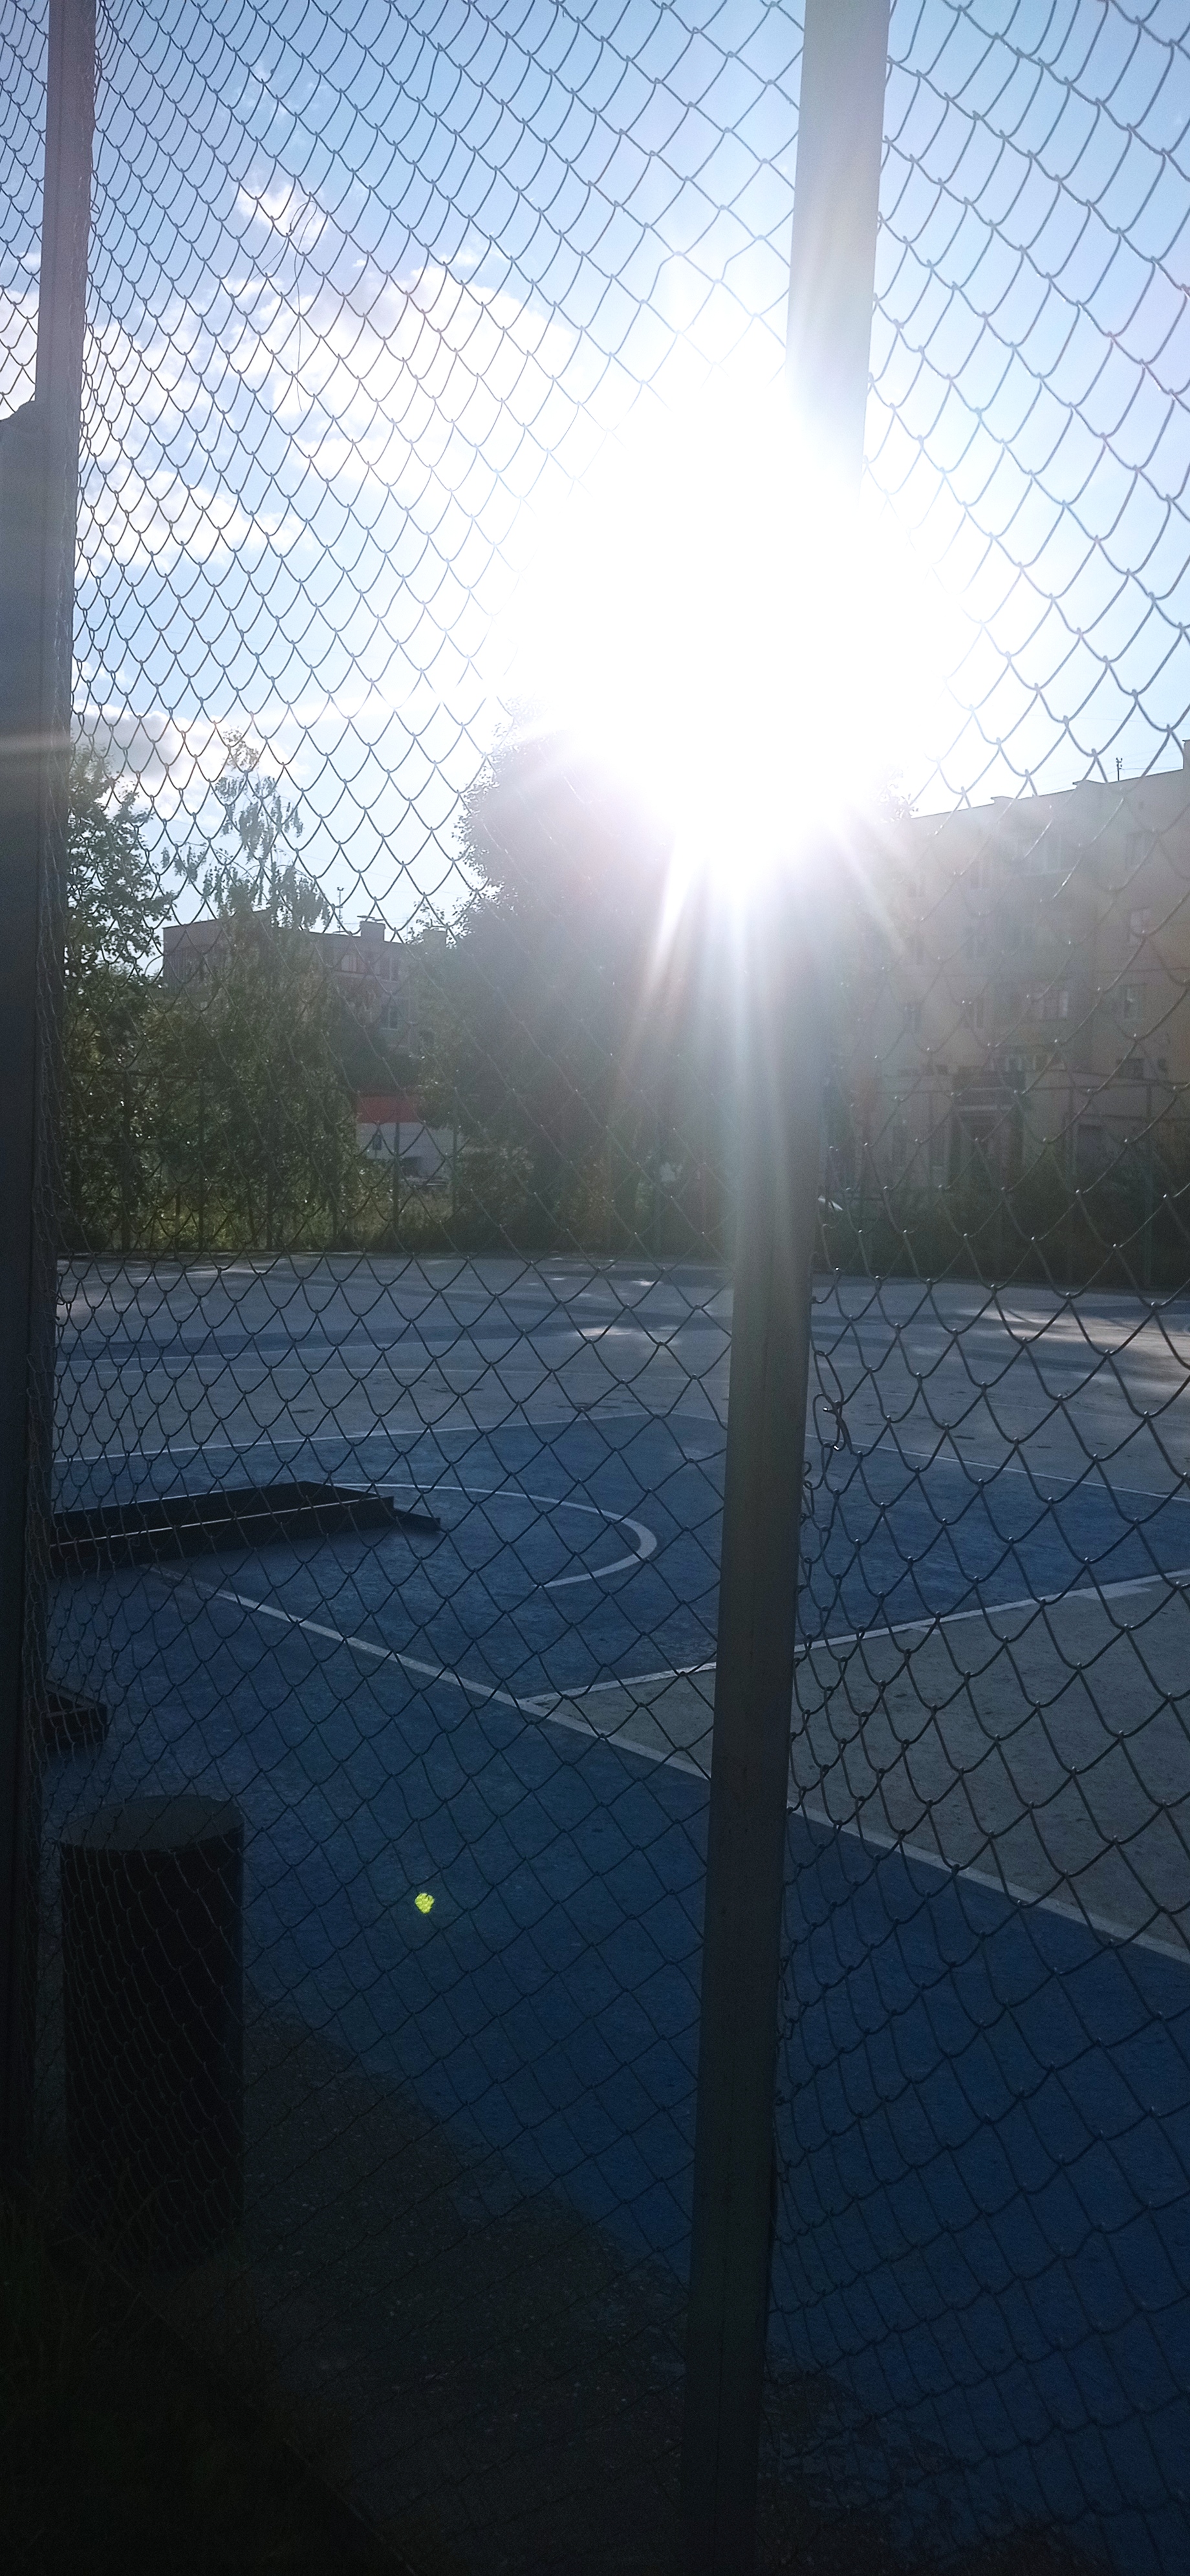 Спортивная школа 4 г. Иваново, баскетбольная площадка.